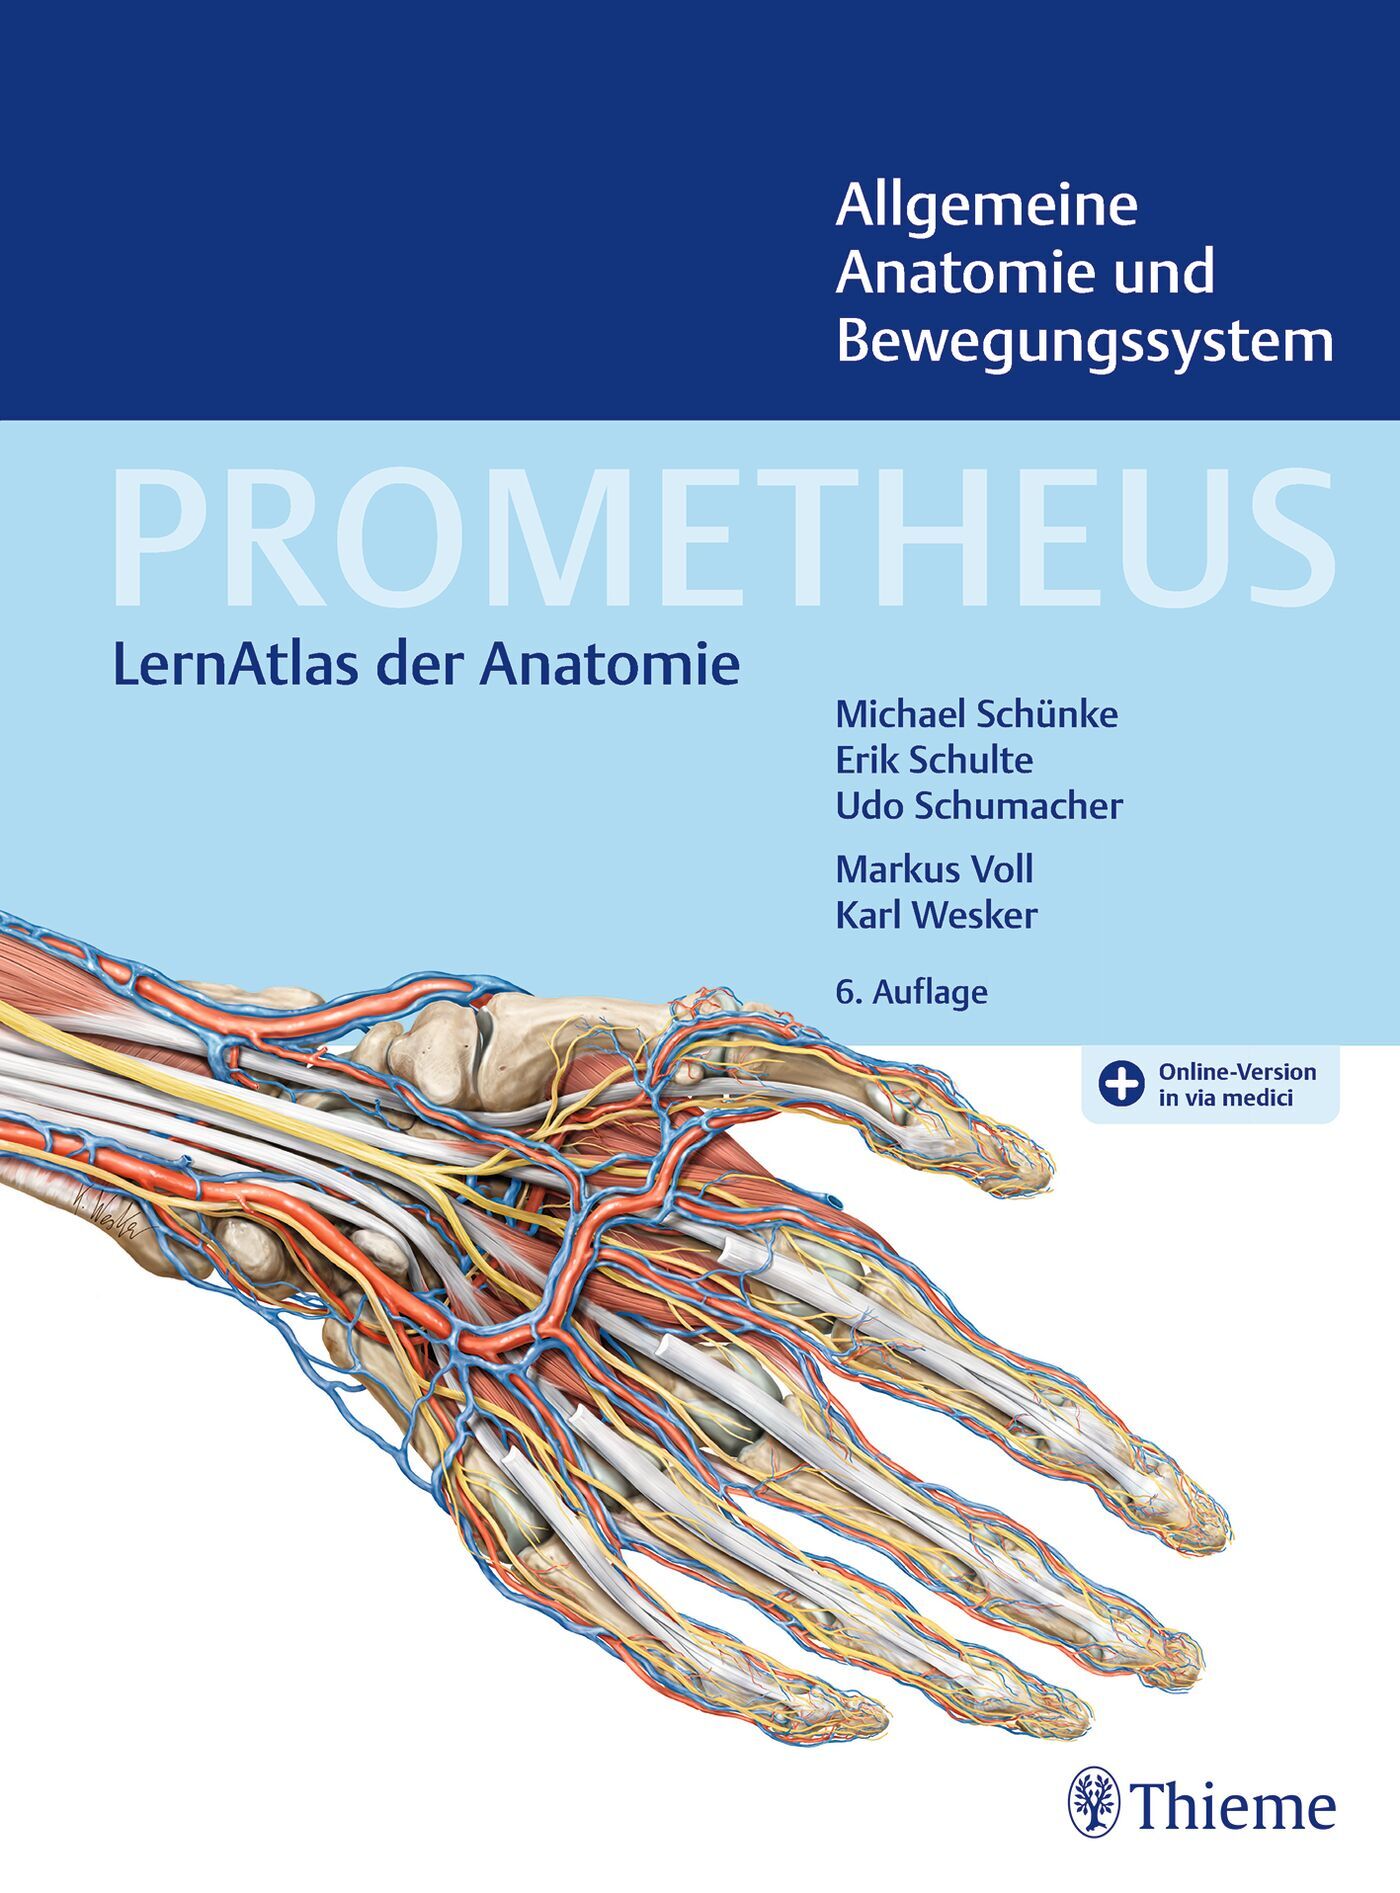 PROMETHEUS Allgemeine Anatomie und Bewegungssystem, 9783132444133